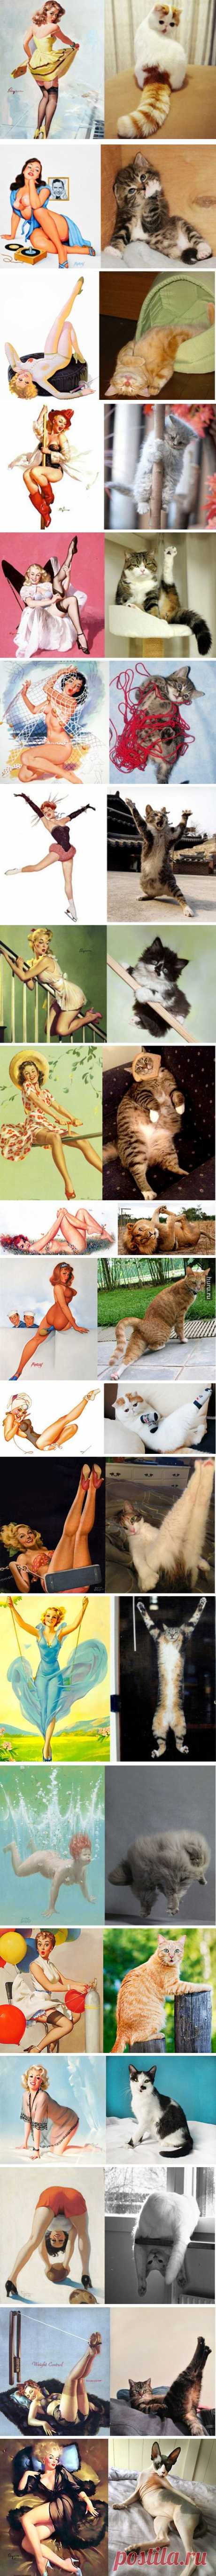 Huru.ru :: Котики в образе пинап-открыток (20 пара фотографий)